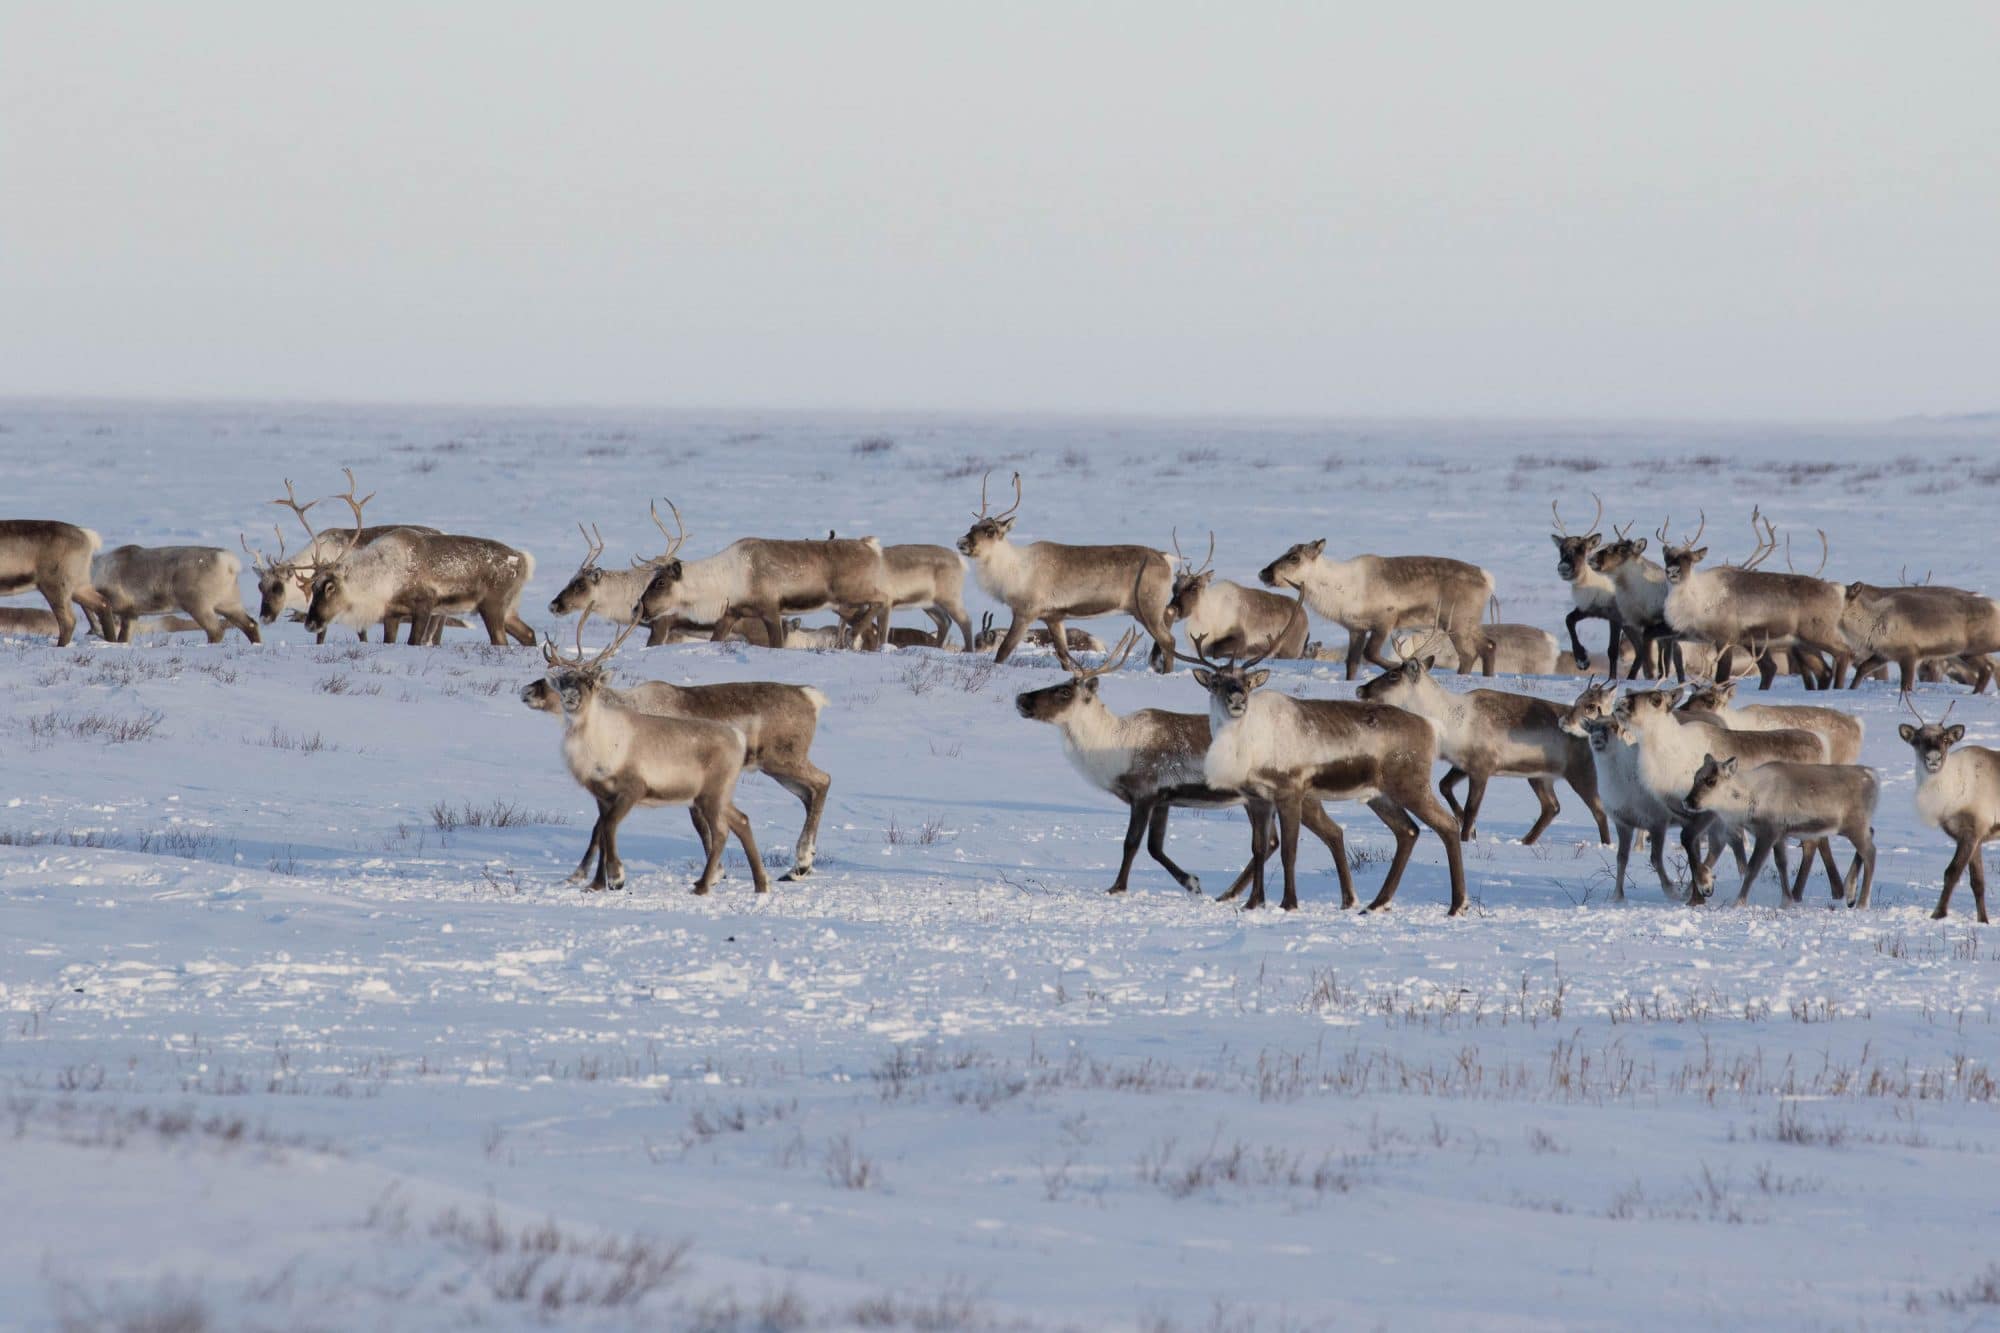 Lire la suite à propos de l’article Ours polaires, caribous, et autres merveilles de l’Arctique en privé !